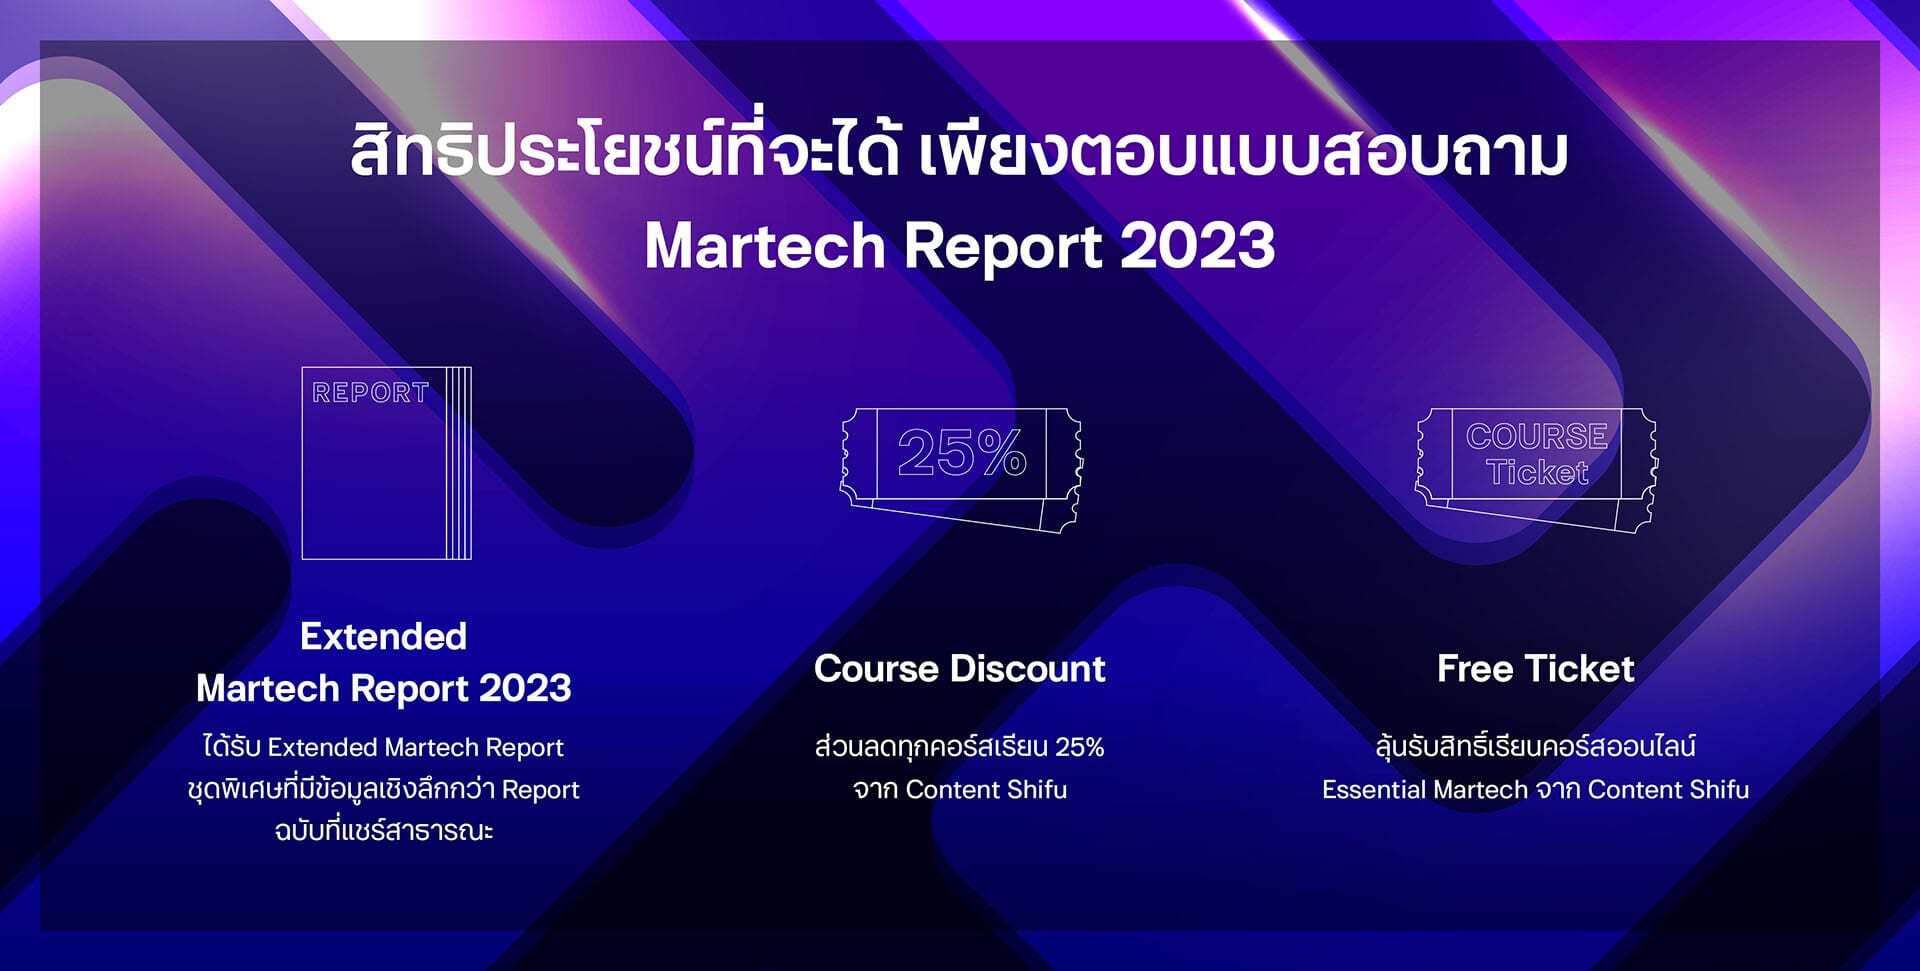 ร่วมสร้าง Martech Report 2023 เล่มแรกของไทย